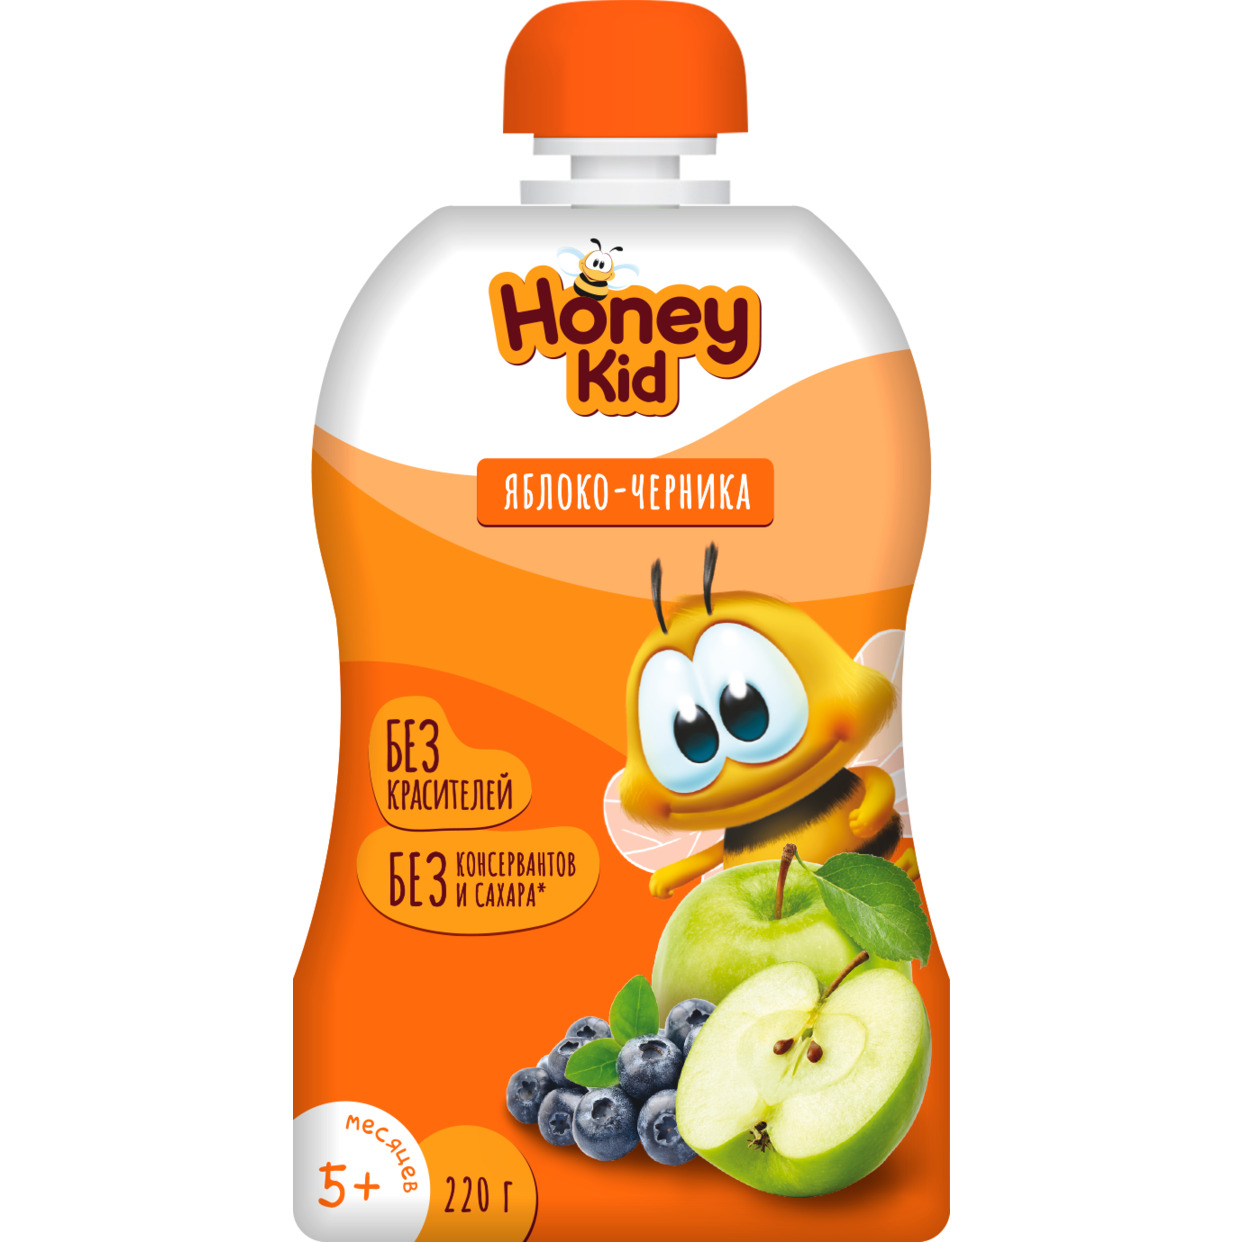 Акция в Пятерочке на Пюре "Honey Kid" из яблок и черники для детского питания для детей раннего возраста гомогенизированное, стерилизованное с 5 месяцев 220г